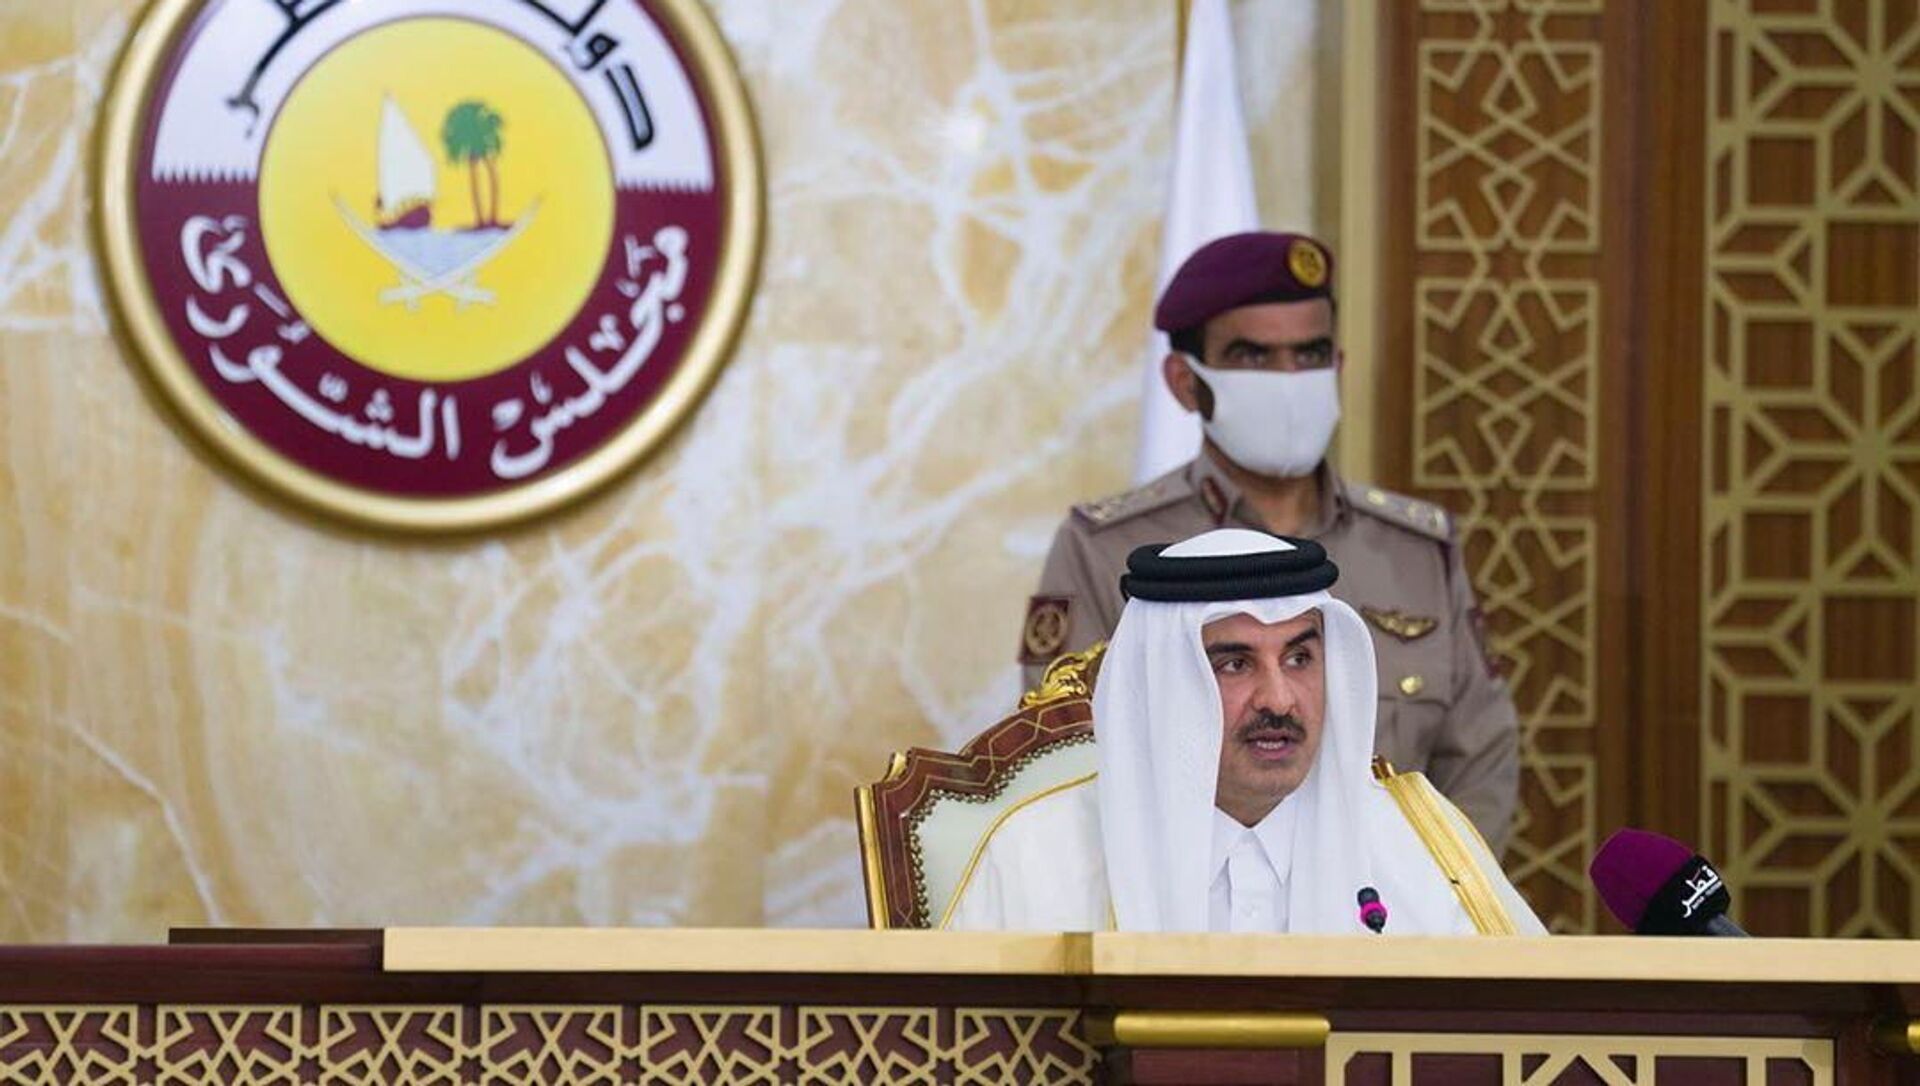 أمير قطر الشيخ تميم بن حمد آل ثاني يلقي كلمة أمام مجلس الشورى في الدوحة، قطر، 3 نوفمبر/ تشرين الثاني 2020 - سبوتنيك عربي, 1920, 29.07.2021